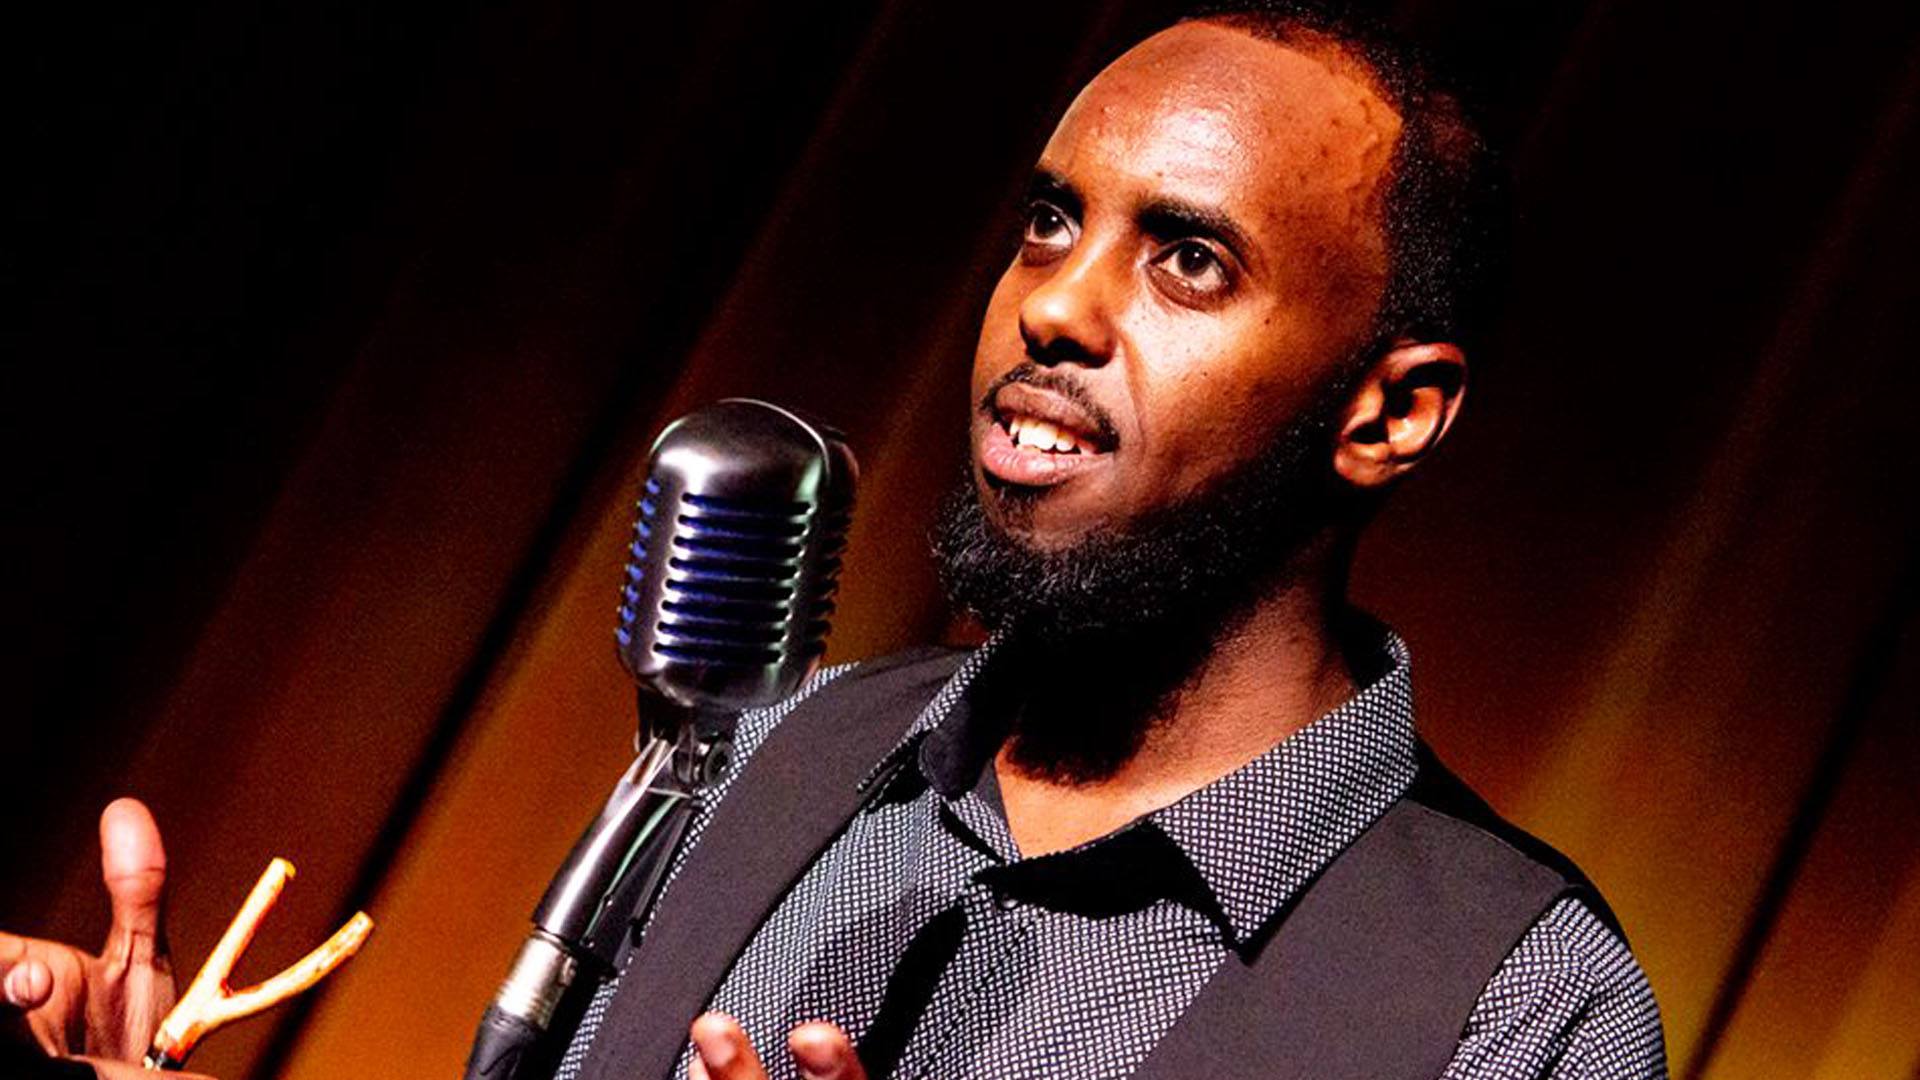 Awale Ahmed on 3CR Spoken Word